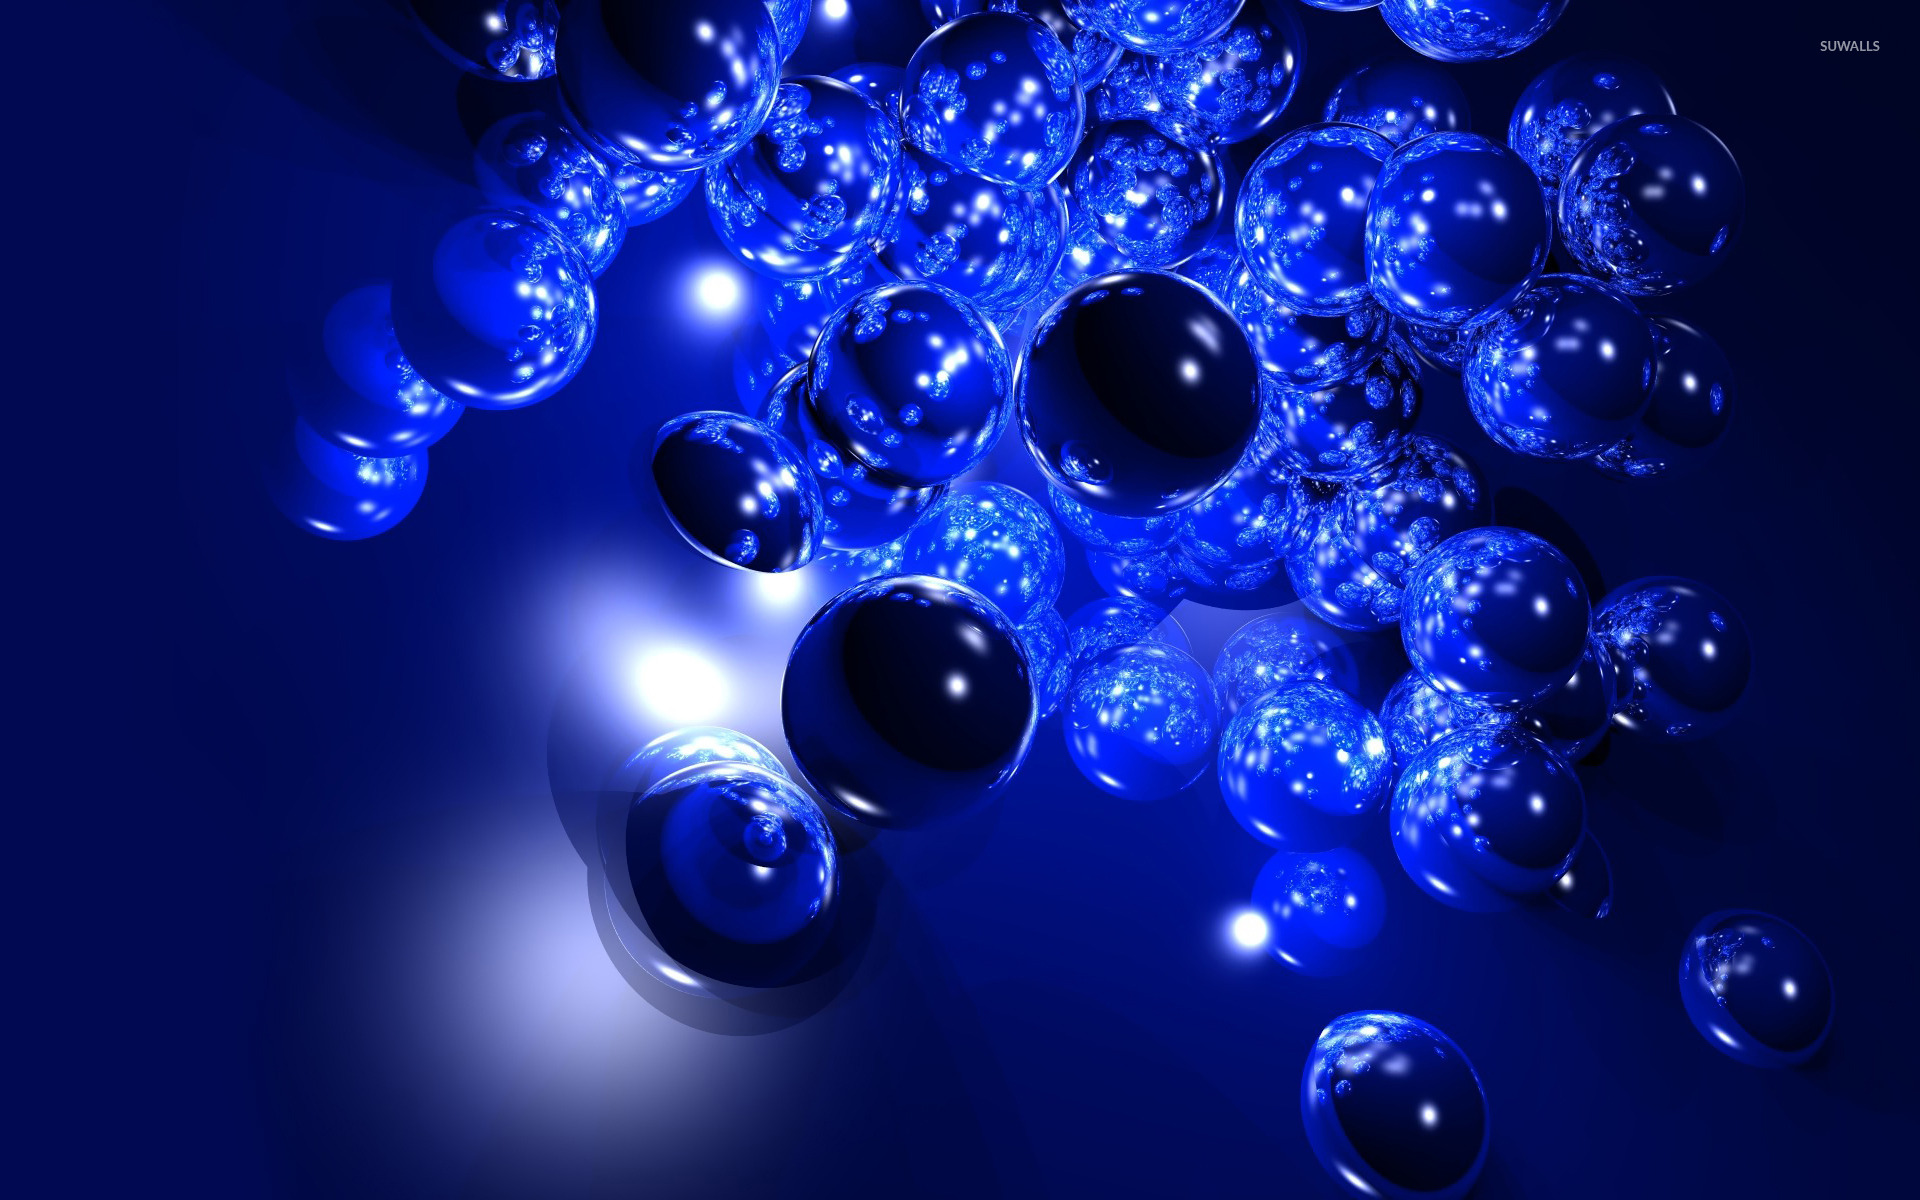 Blue bubbles wallpaper: Hãy cùng tìm hiểu về một hình nền độc đáo đến từ những bong bóng xanh chẳng những tươi sáng mà còn mang lại sức sống cho màn hình của bạn. Hãy chọn ngay một hình nền cho mình và cảm nhận được cái nhìn mới mẻ cùng chúng tôi!